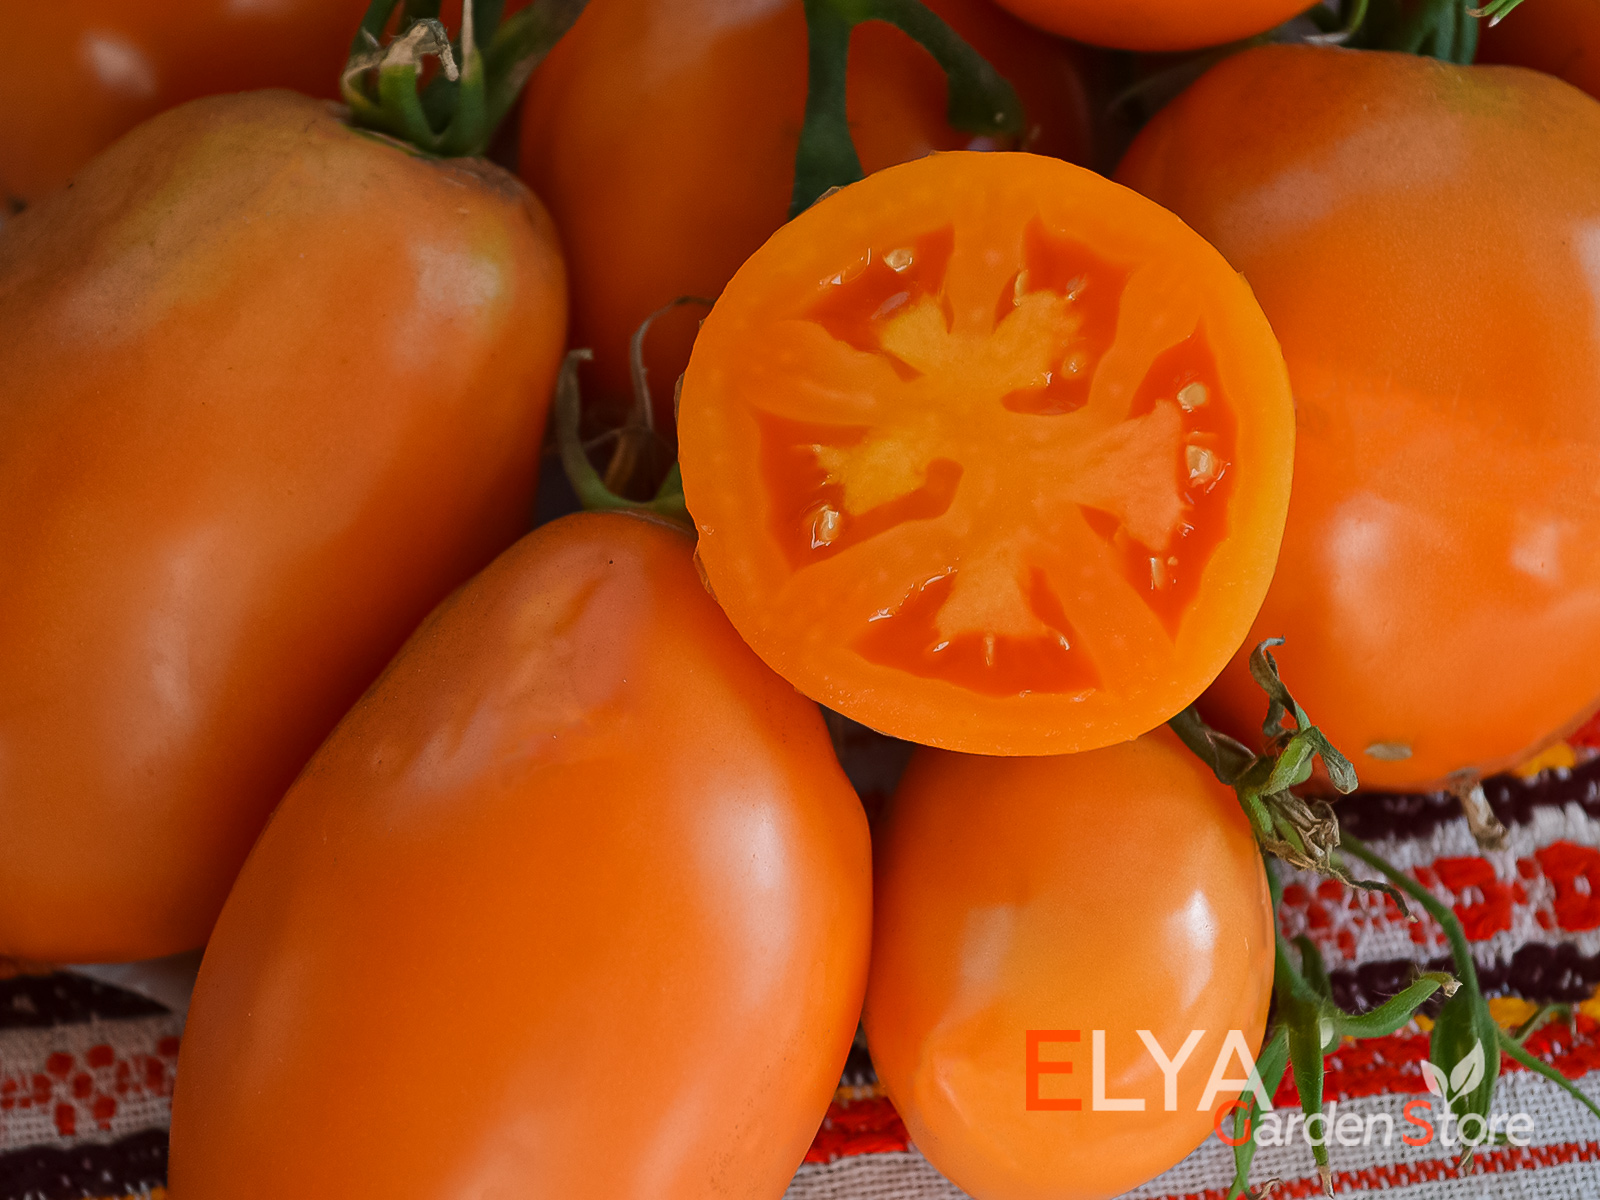 Коллекционный сорт томата Курага - яркая внешность и отличный сладкий вкус - фотография магазина семян Elya Garden 